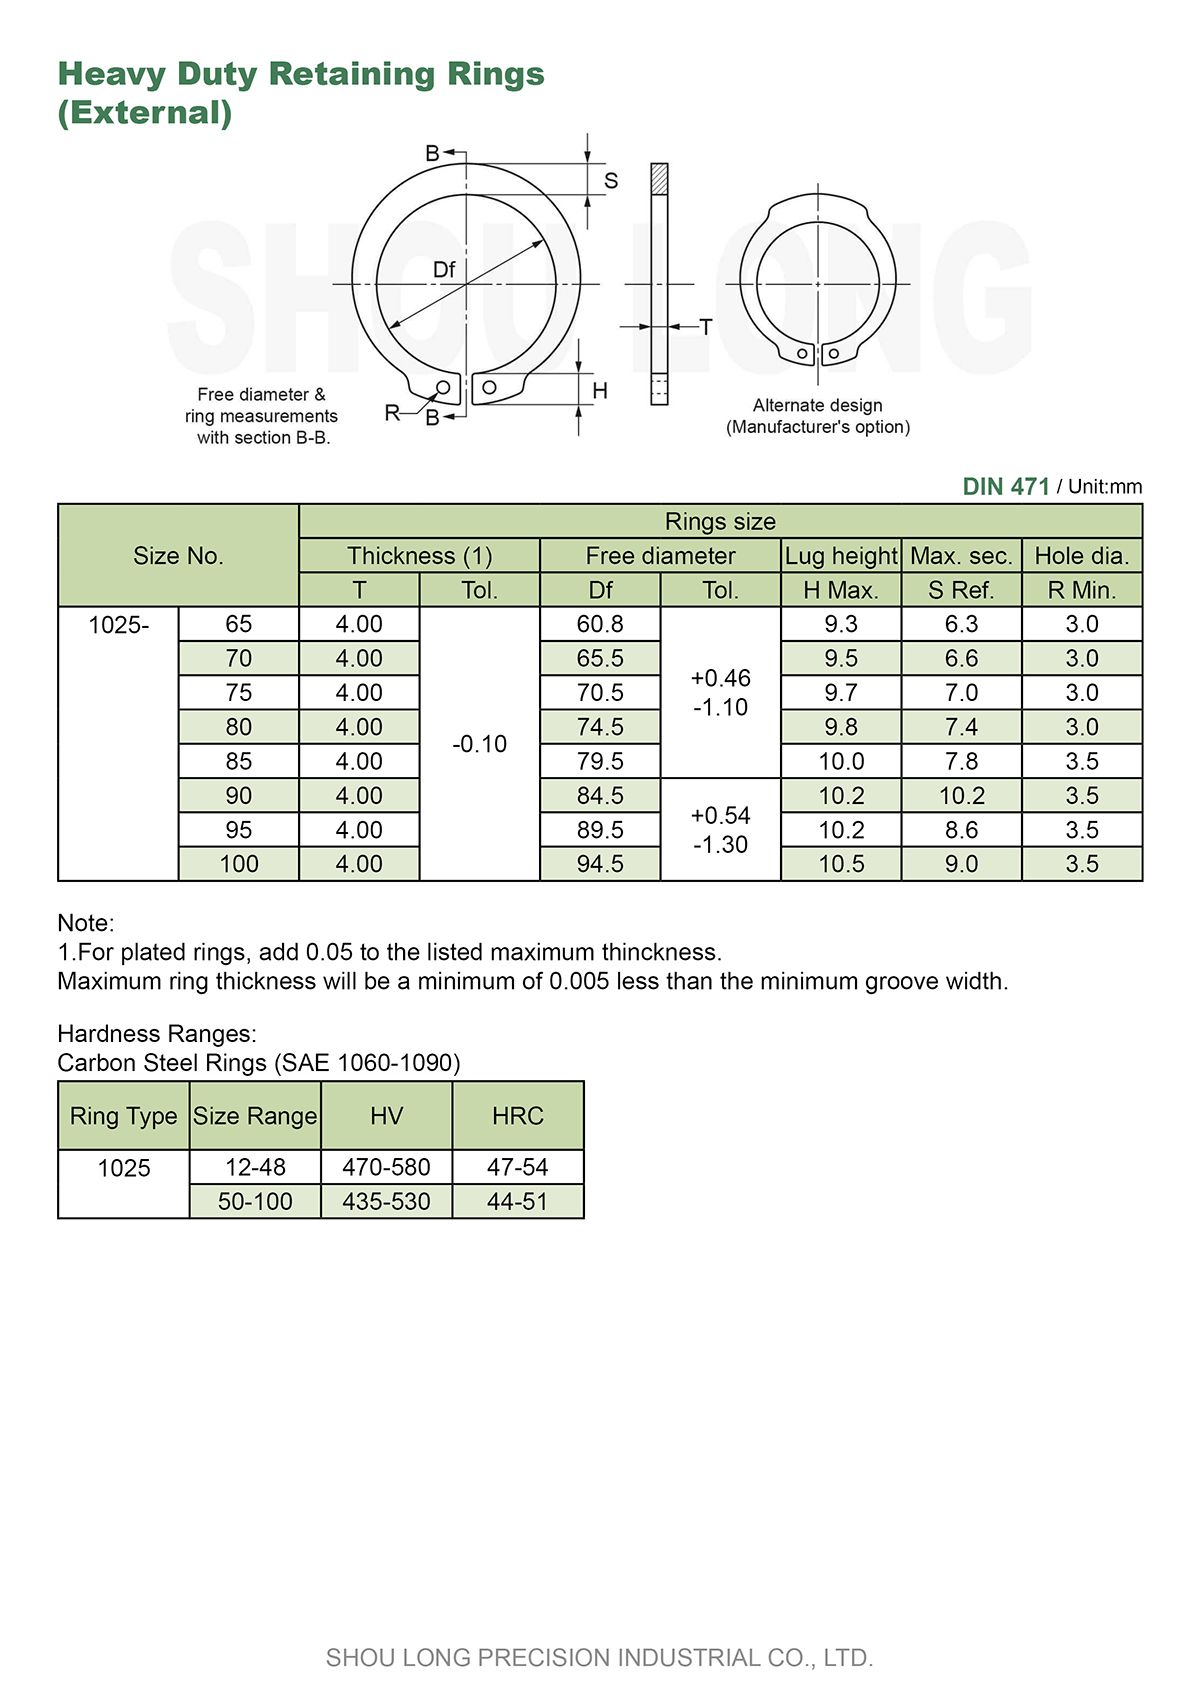 مواصفات حلقات الاحتفاظ الثقيلة المترية للعمود DIN471 - 2